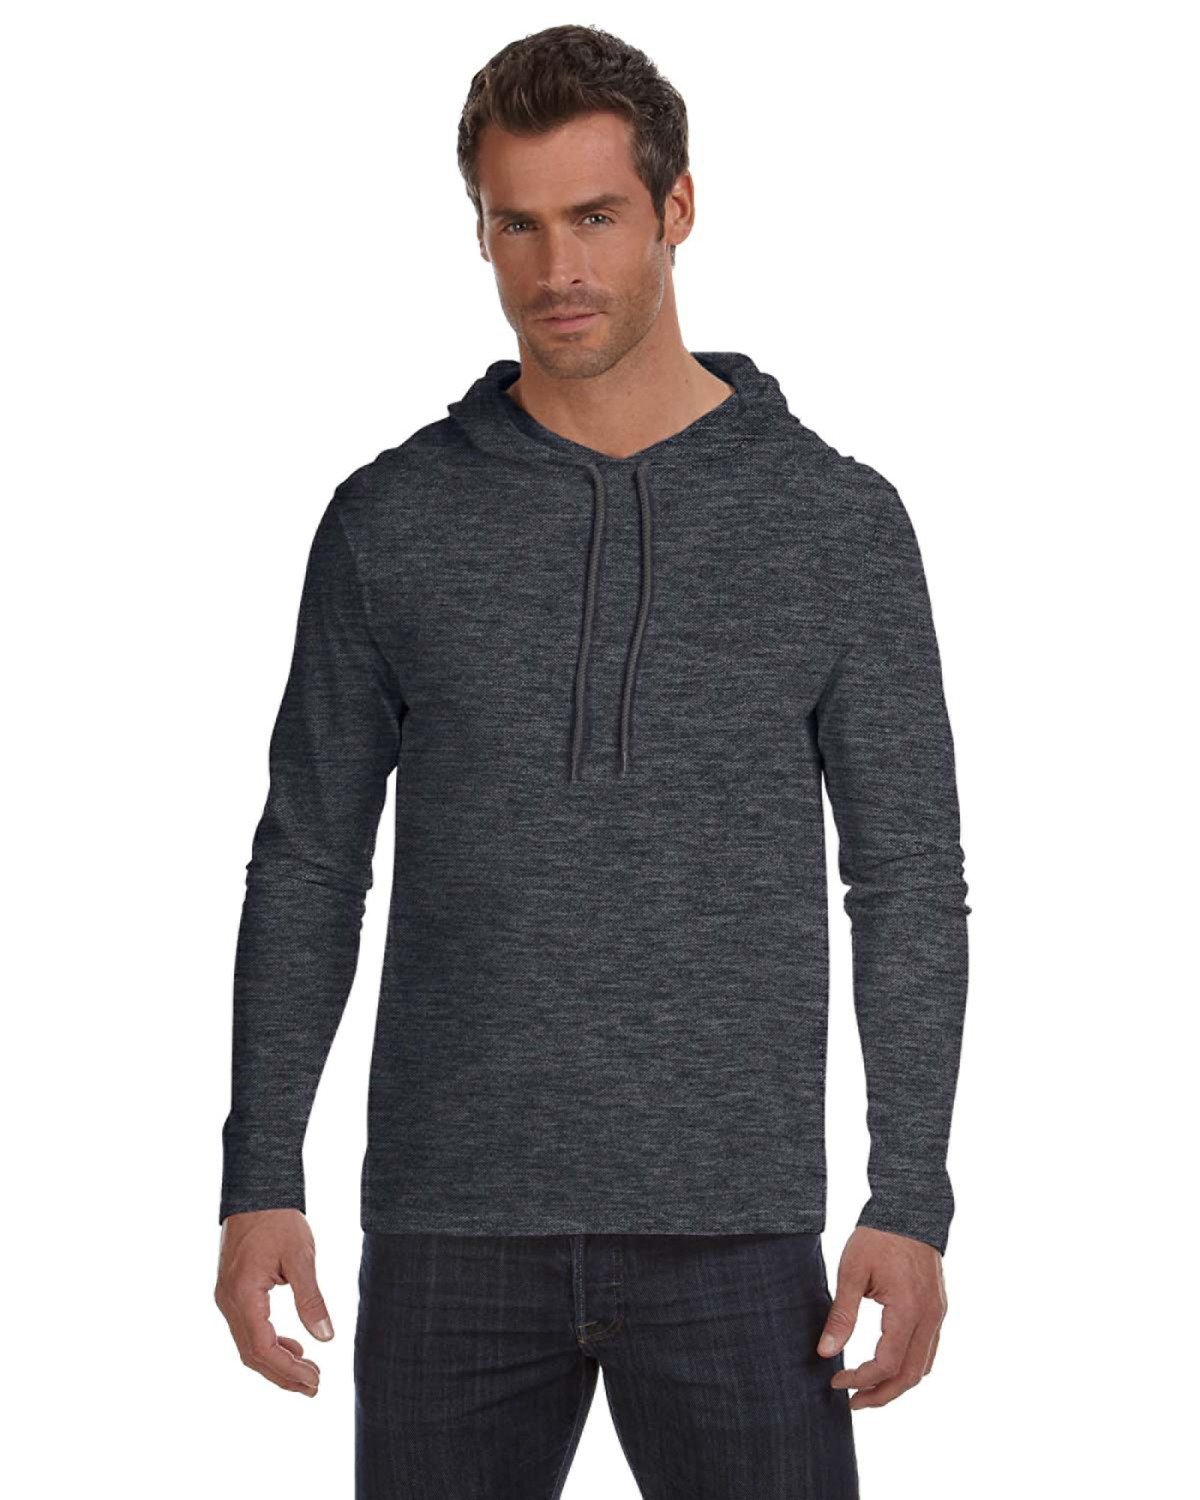 Long-Sleeve Hooded Gildan T-Shirt | alphabroder Adult Lightweight